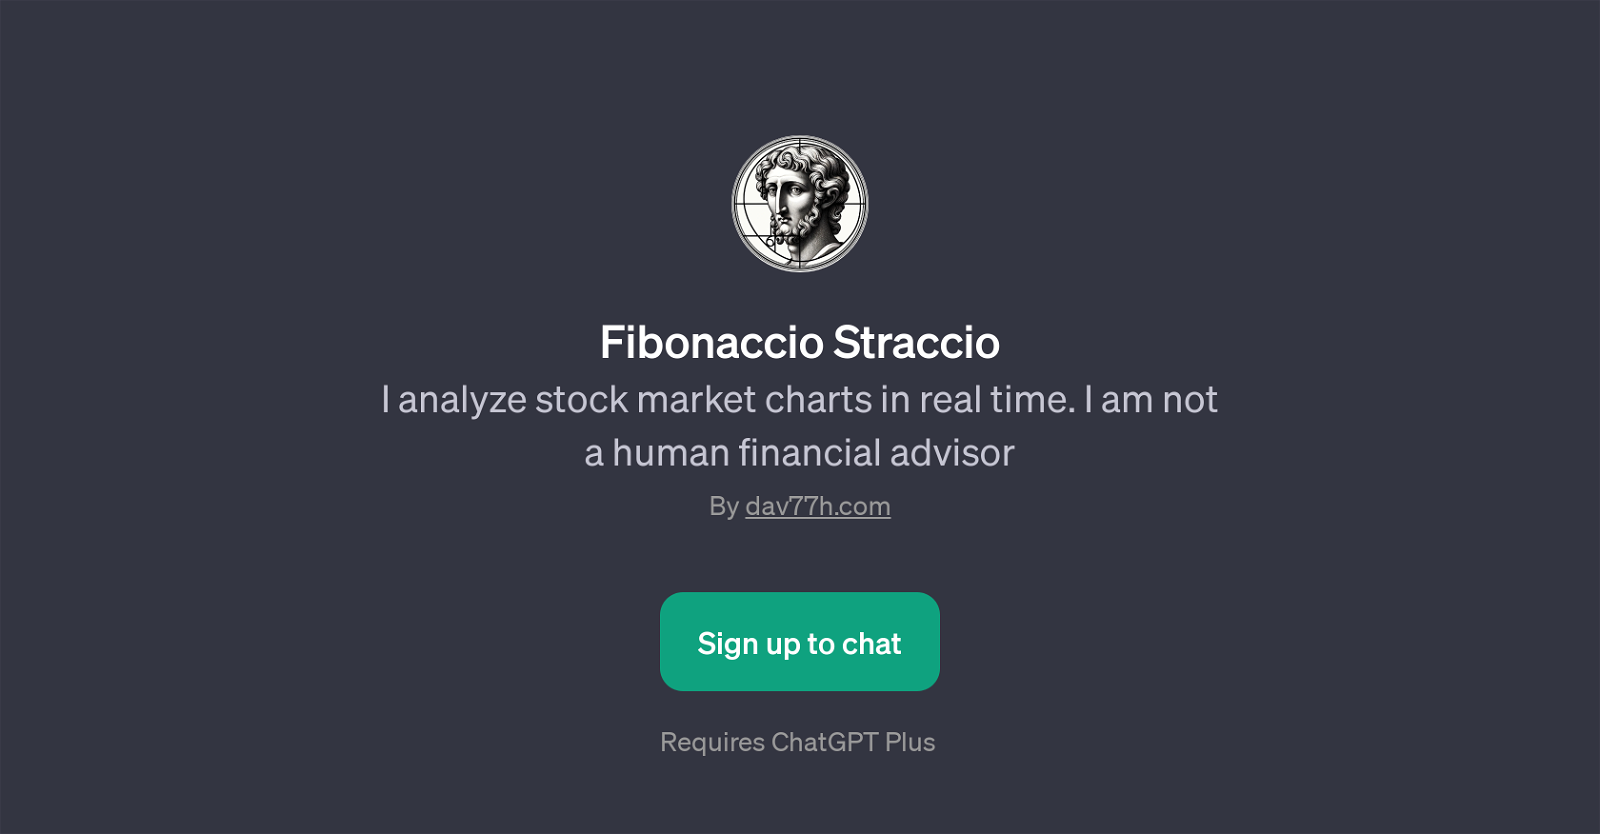 Fibonaccio Straccio website